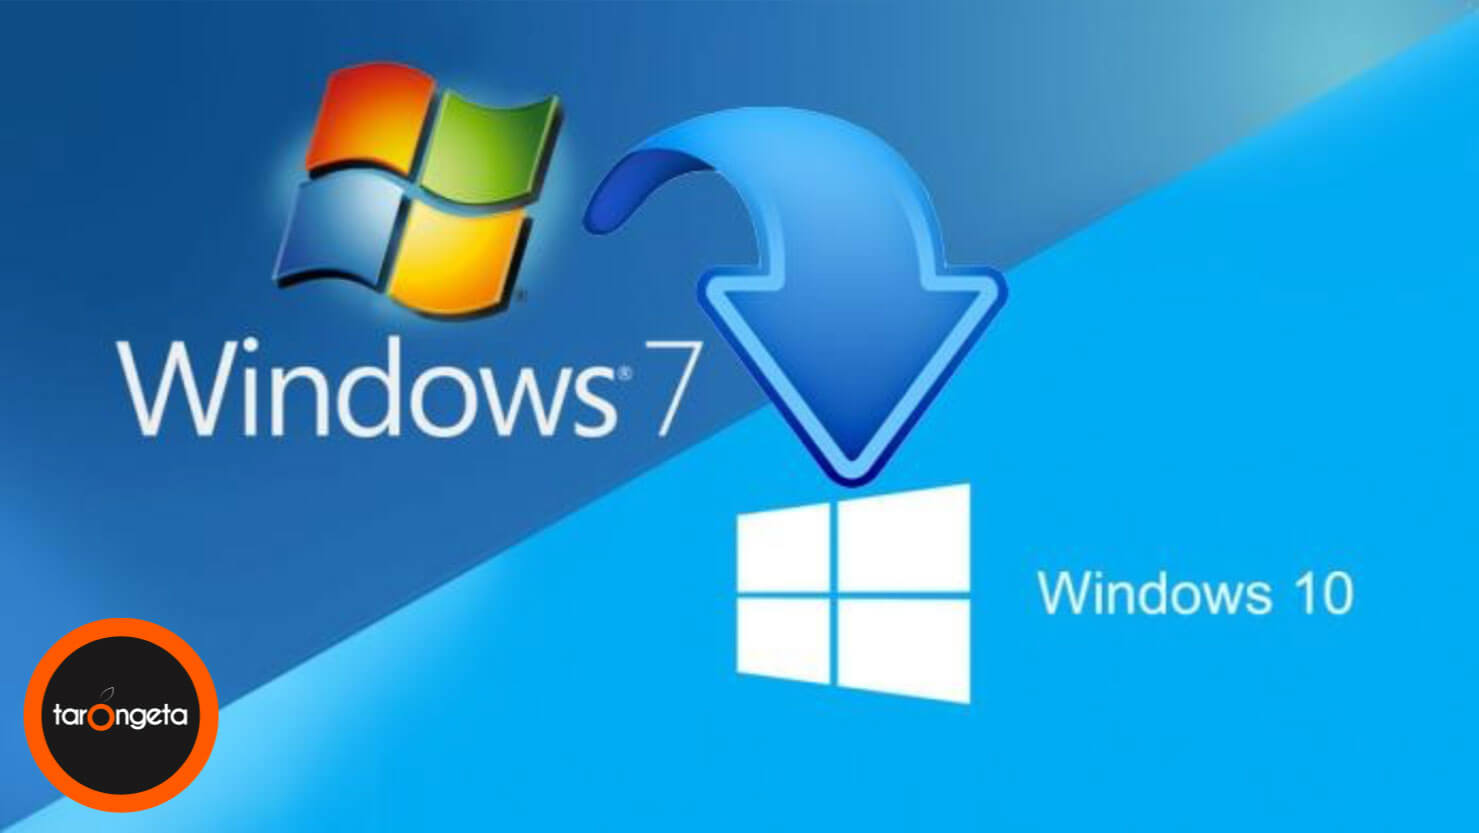 Llega El Fin Del Soporte De Windows 7 La Tarongeta Informatica